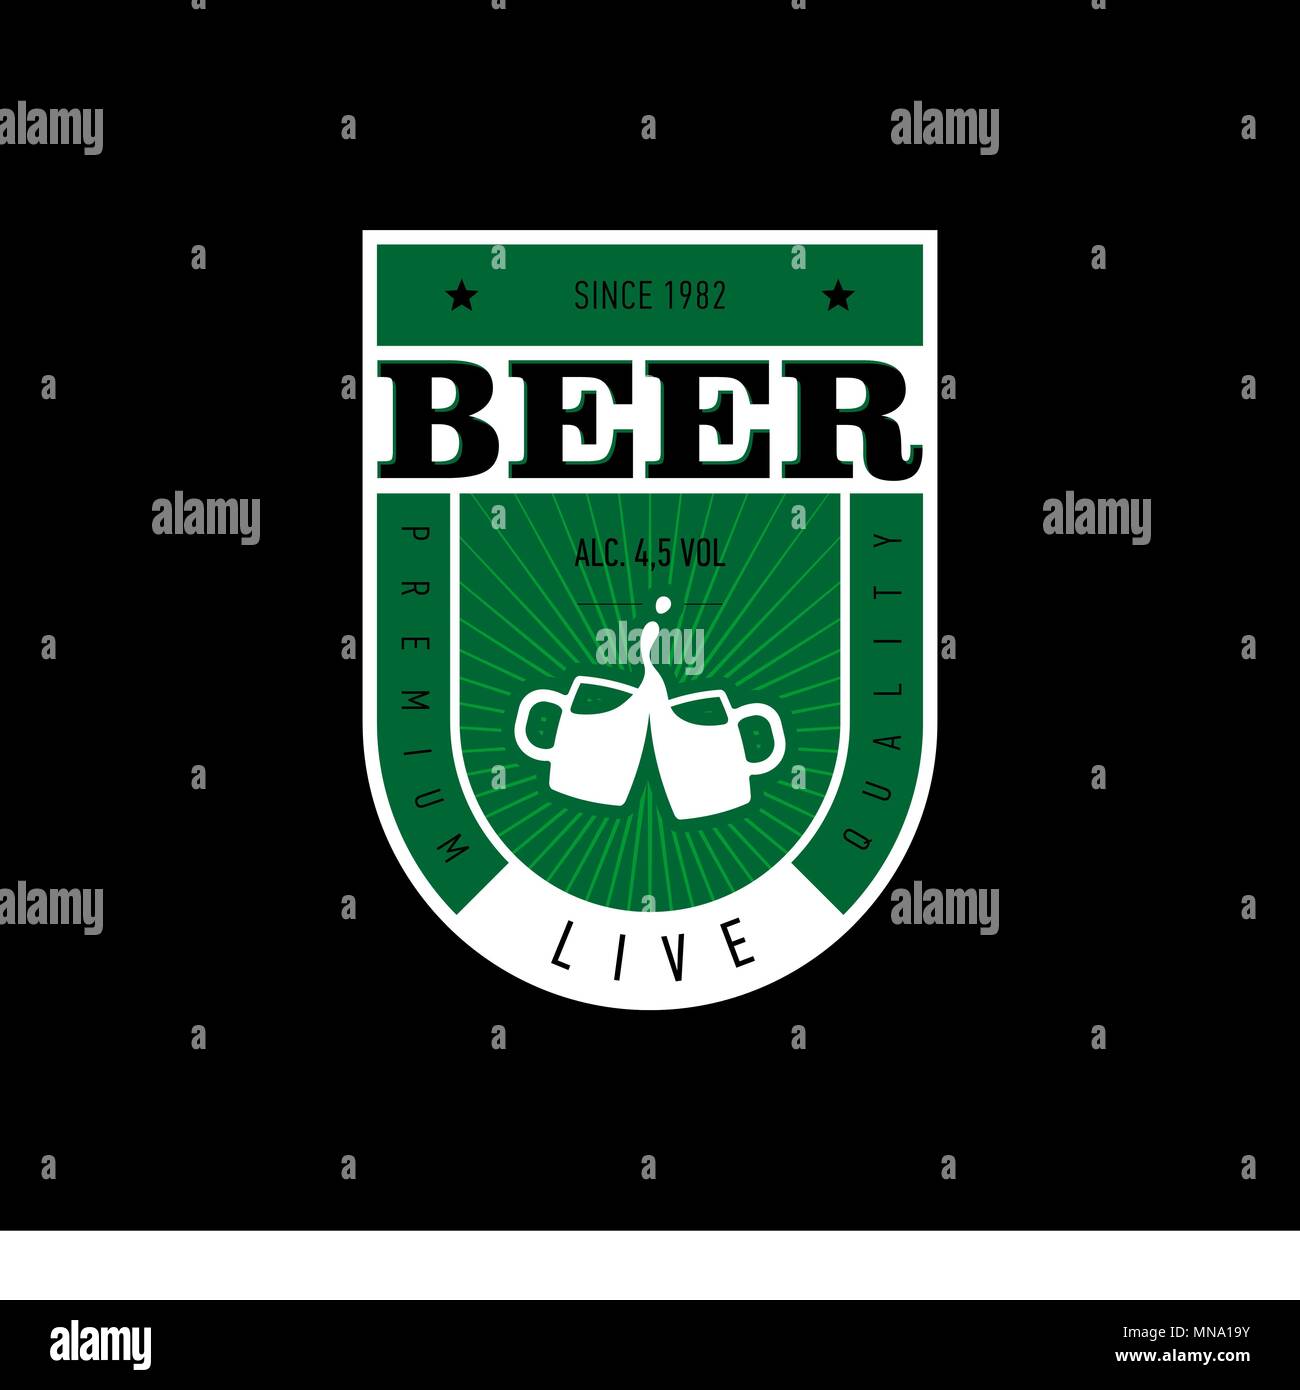 Etichetta di birra Design. immagine del tintinnio boccali da birra Illustrazione Vettoriale